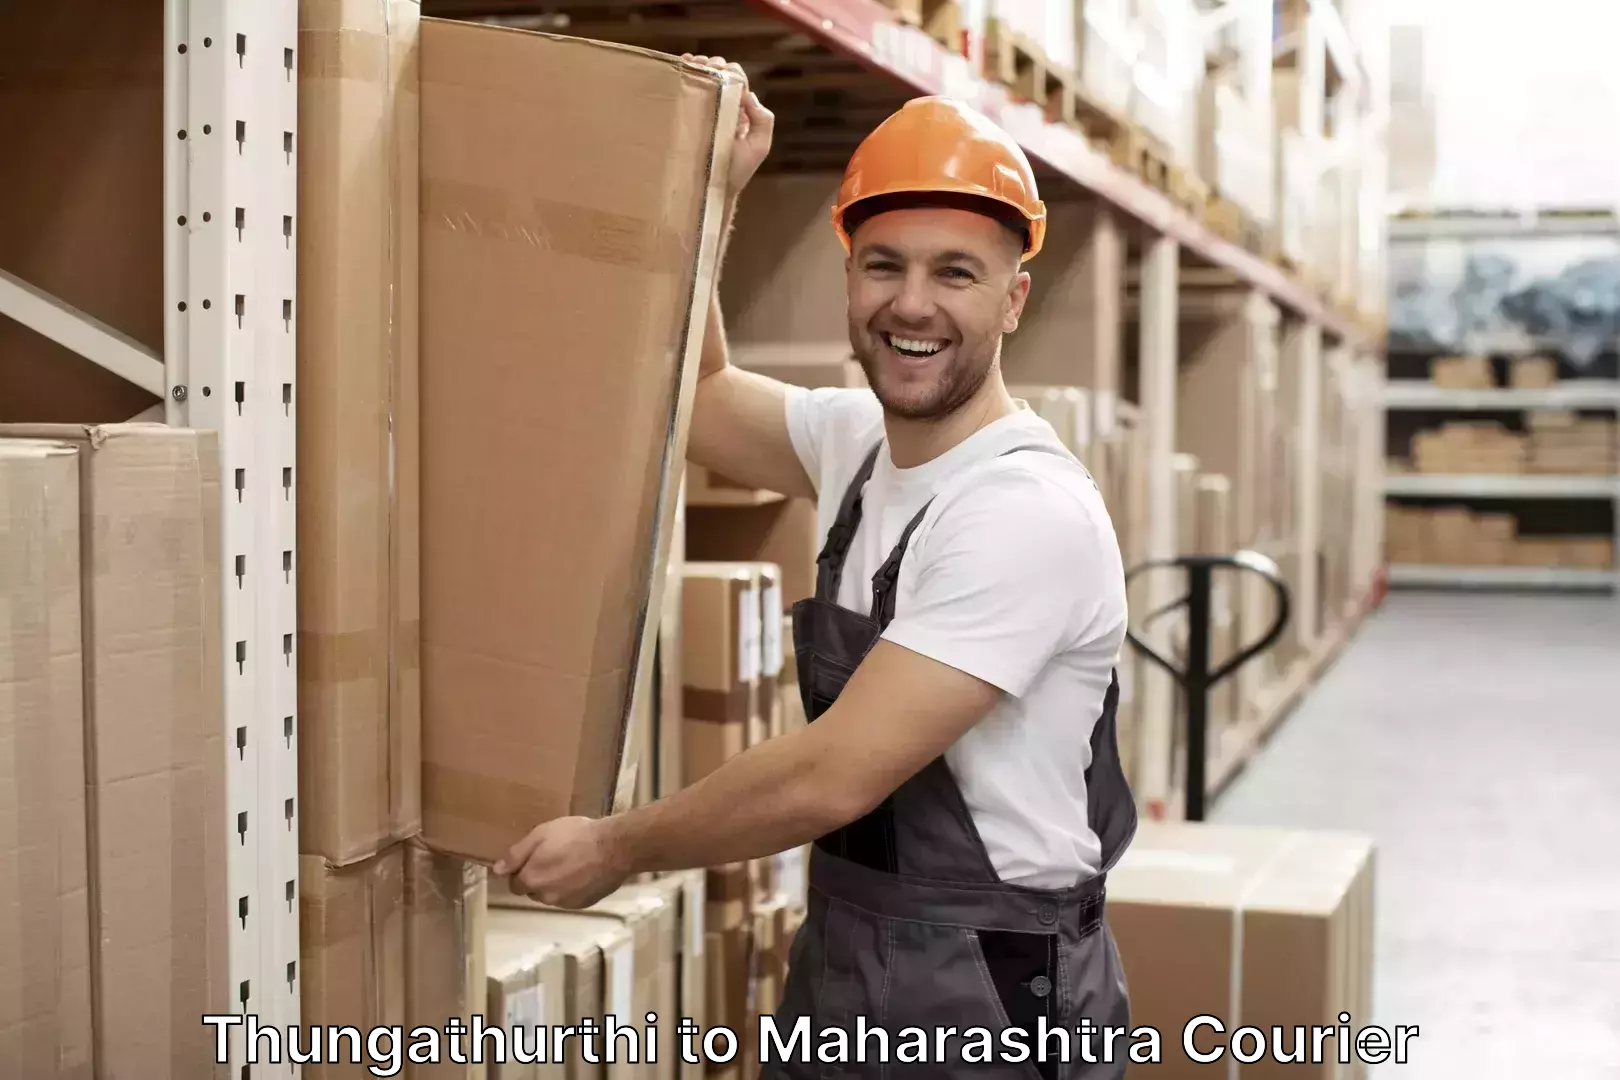 Luggage delivery providers Thungathurthi to Maharashtra